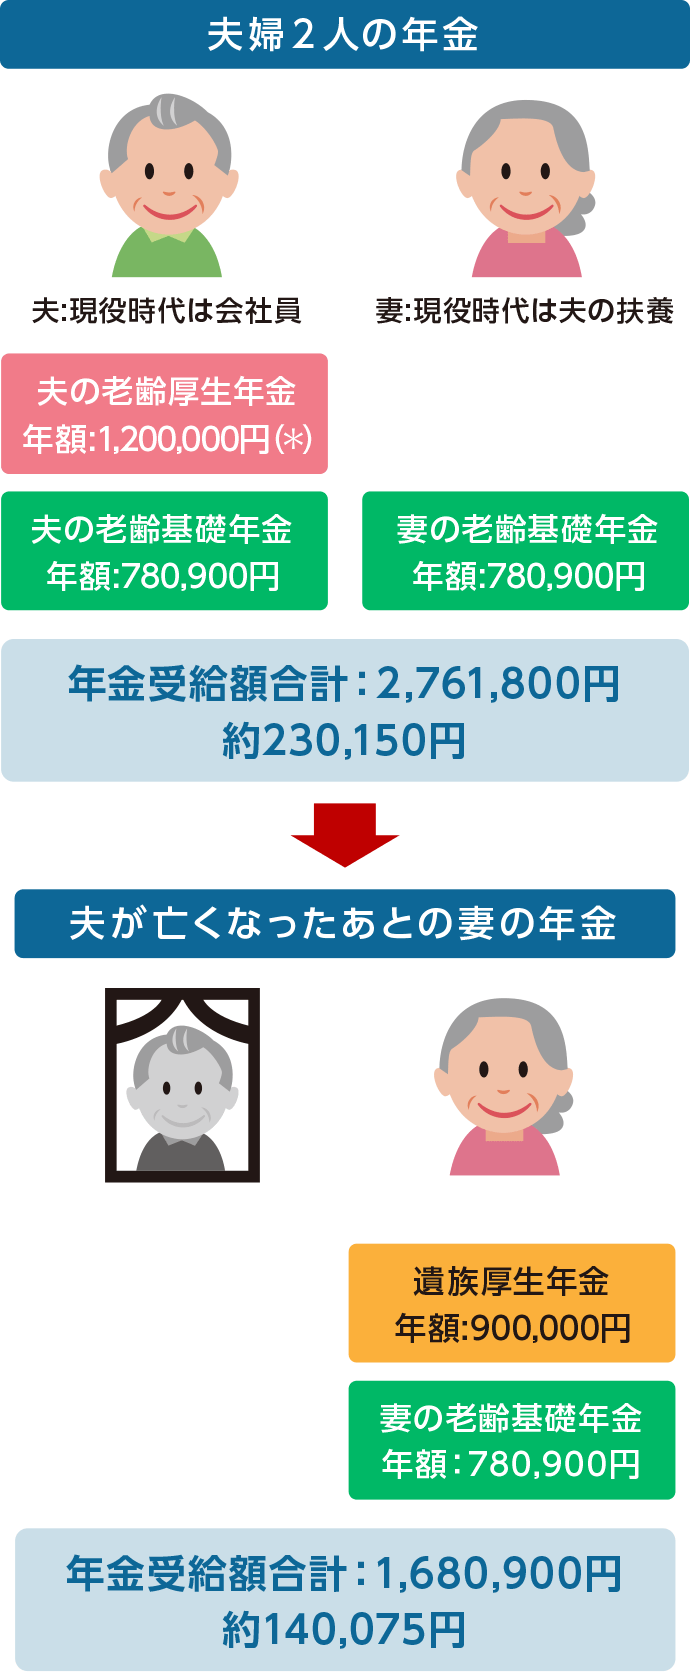 生命 保険 おすすめ 40 代 女性 WIT Japan